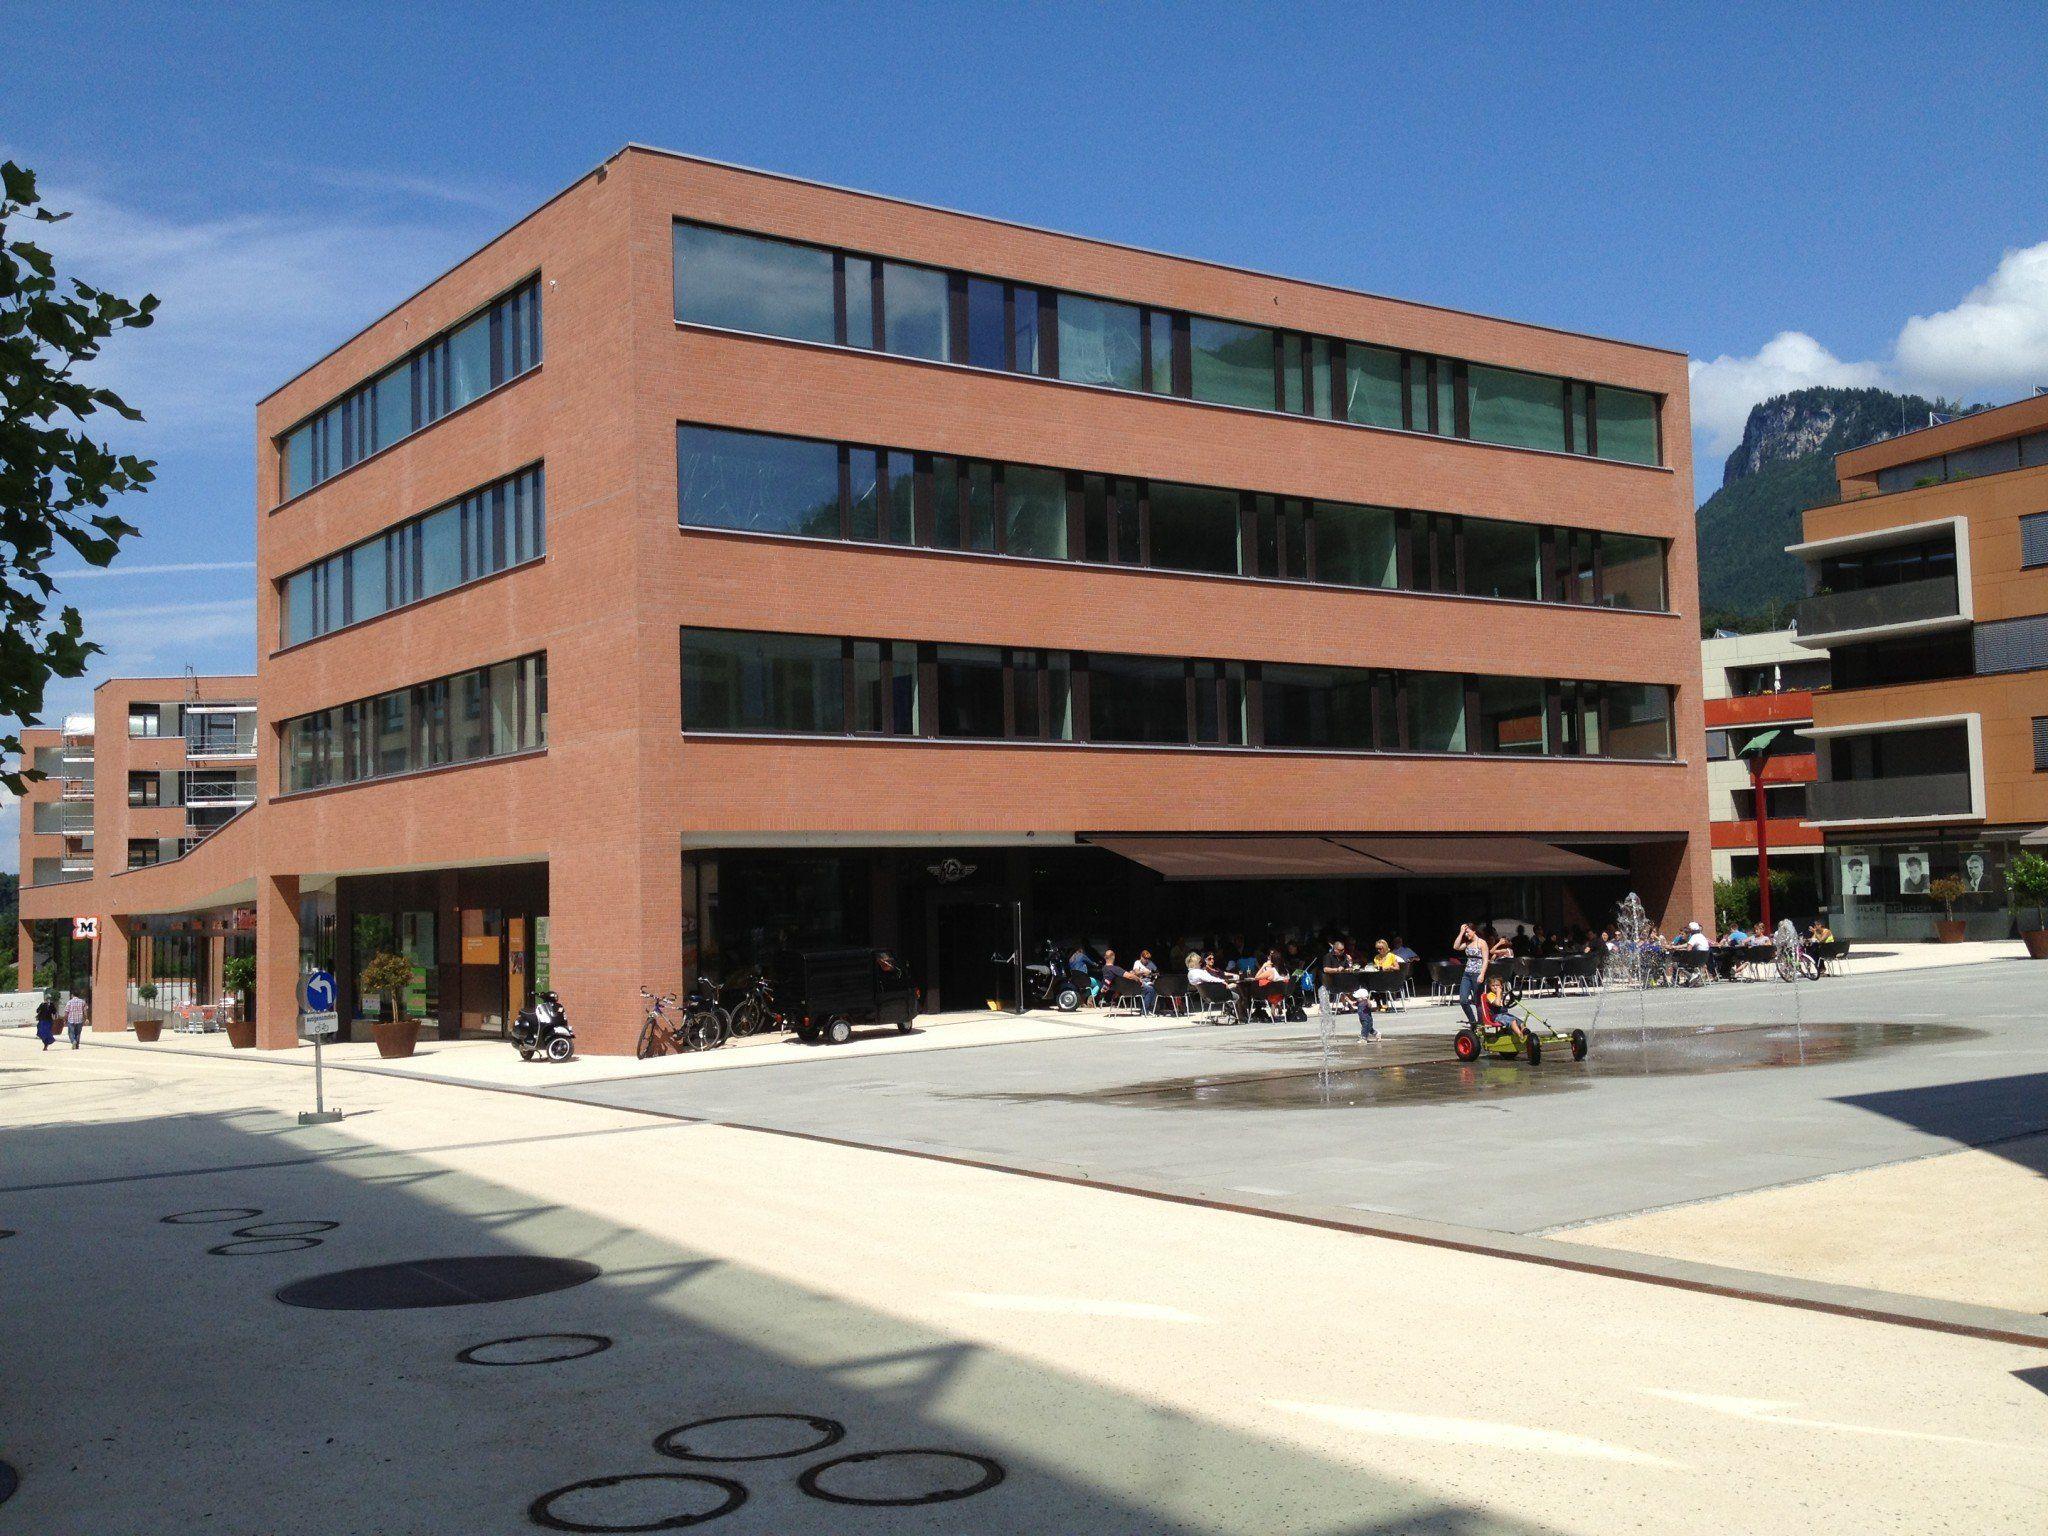 Das neue "Bildungshaus" am Garnmarkt eröffnet heute offiziell - heute und morgen findet ein Tag der offenen Tür statt.